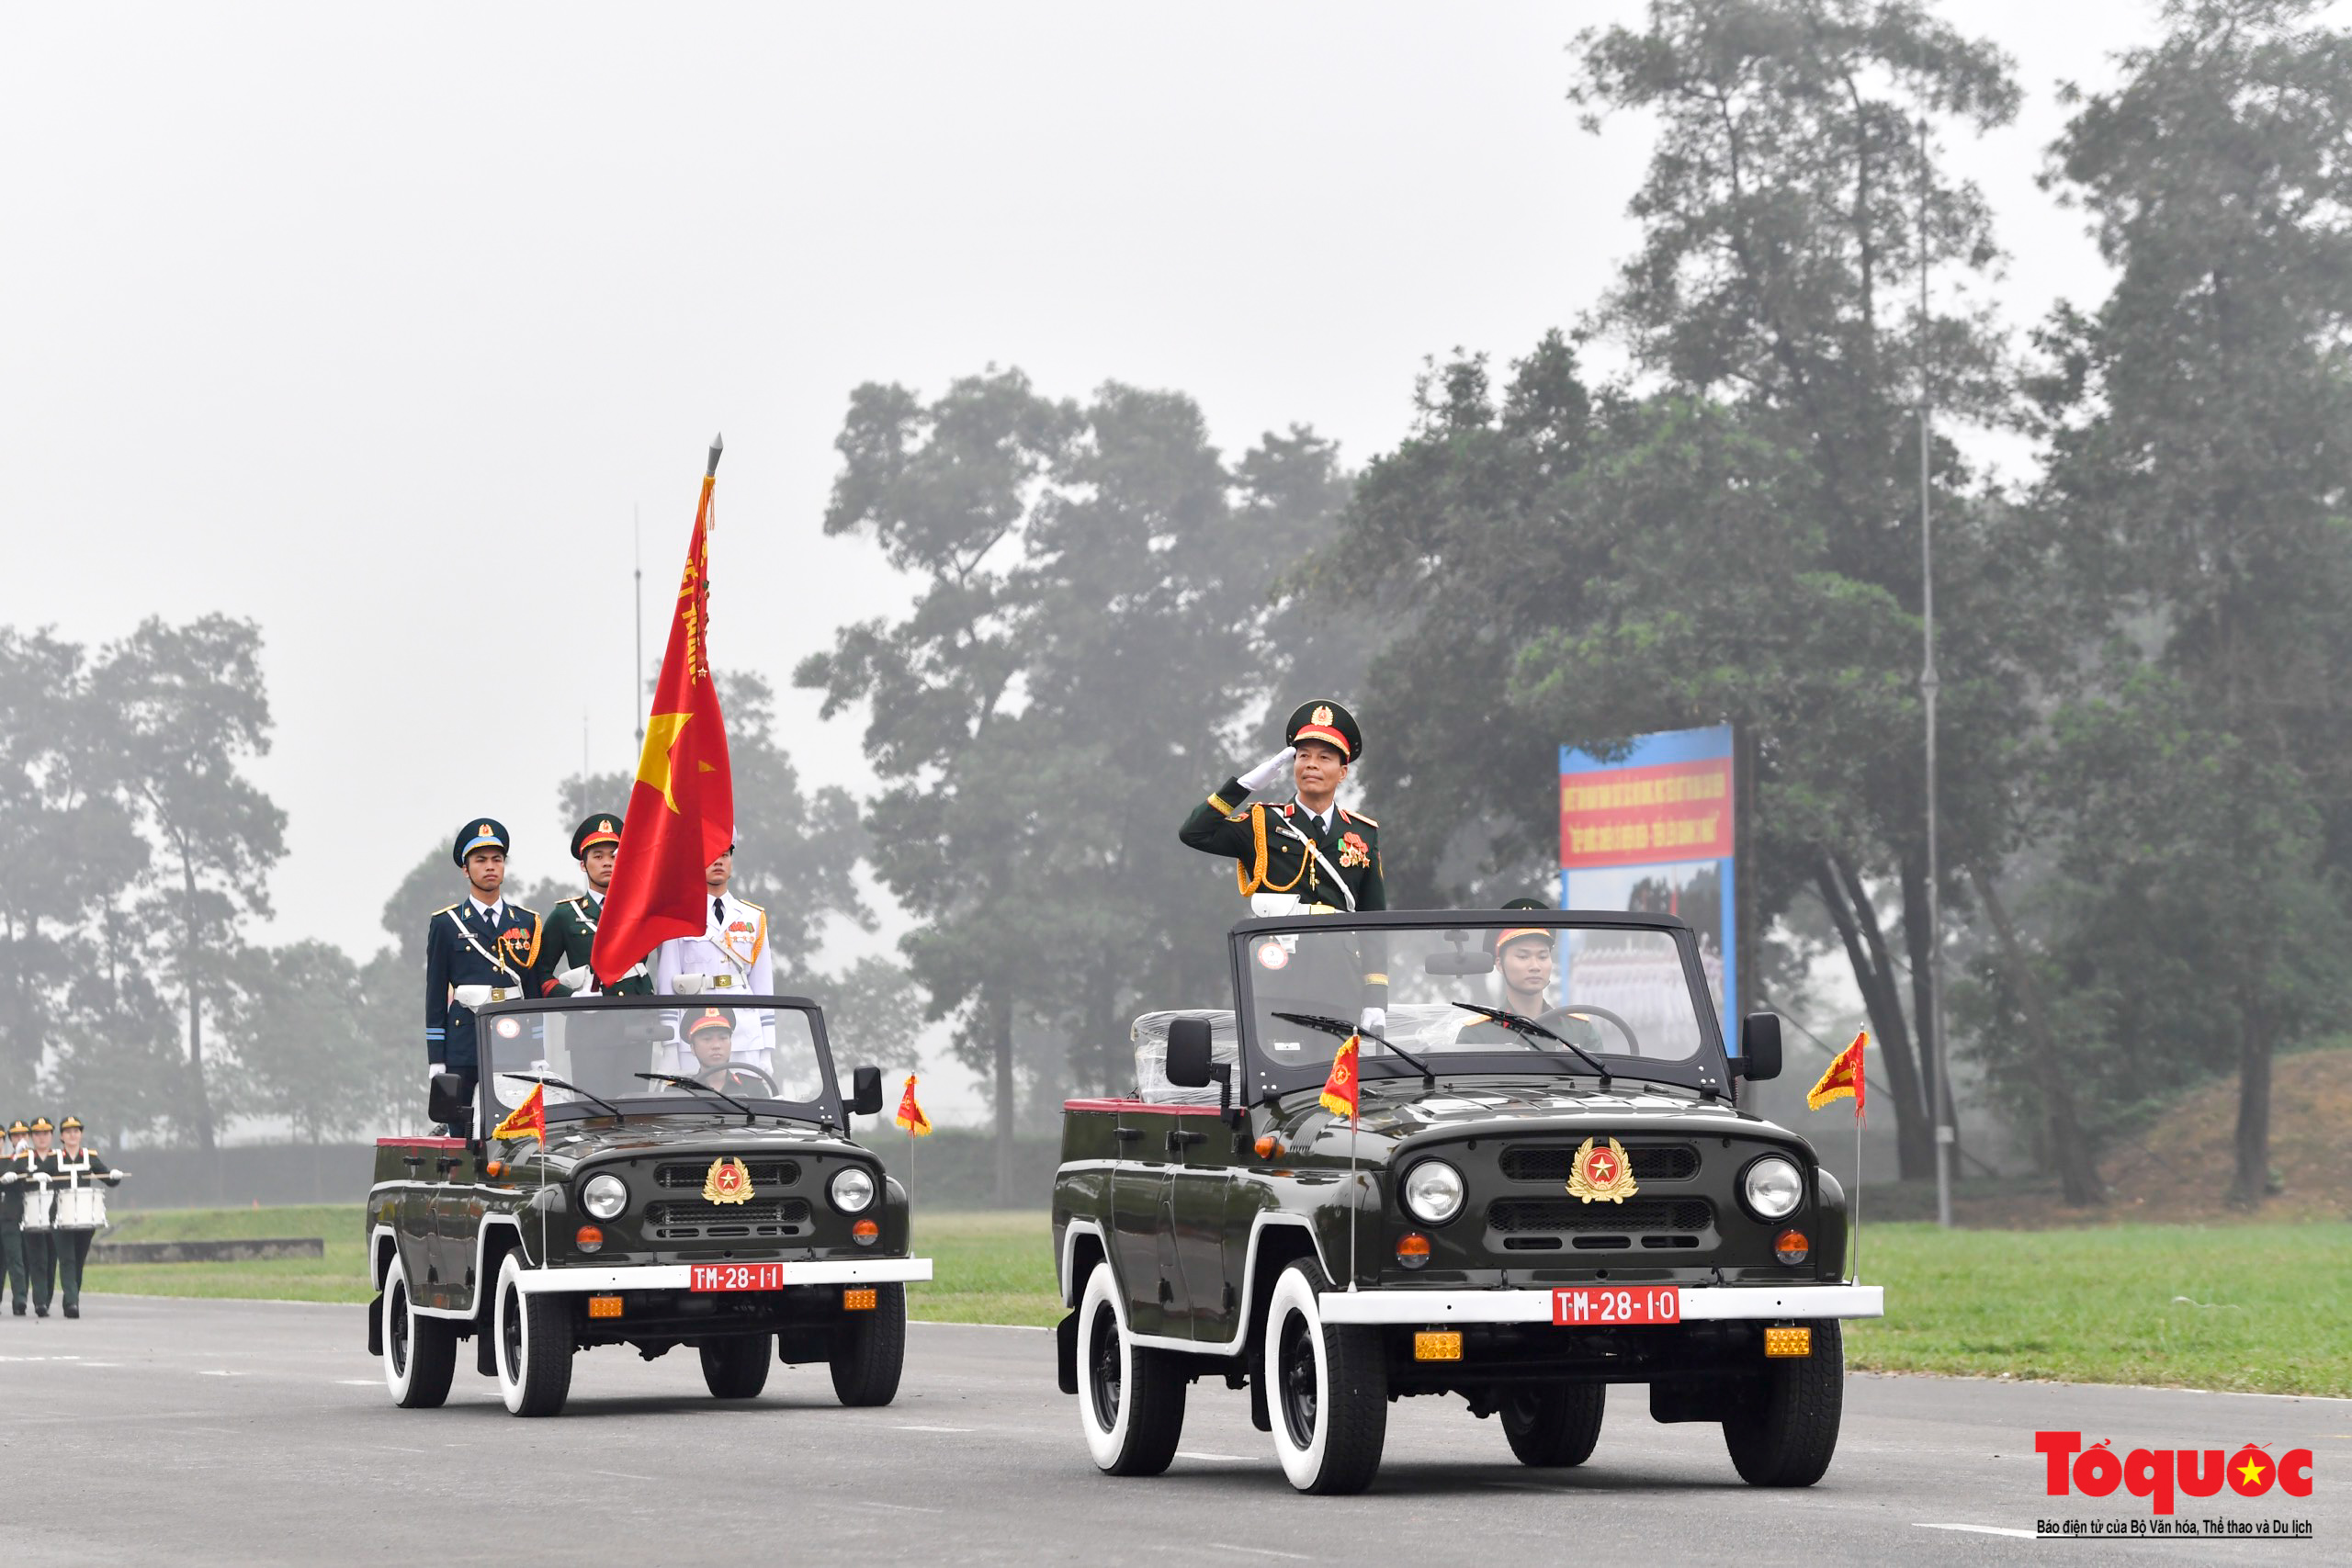 Hé lộ hình ảnh diễu binh, diễu hành kỷ niệm 70 năm Chiến thắng Điện Biên Phủ - Ảnh 2.